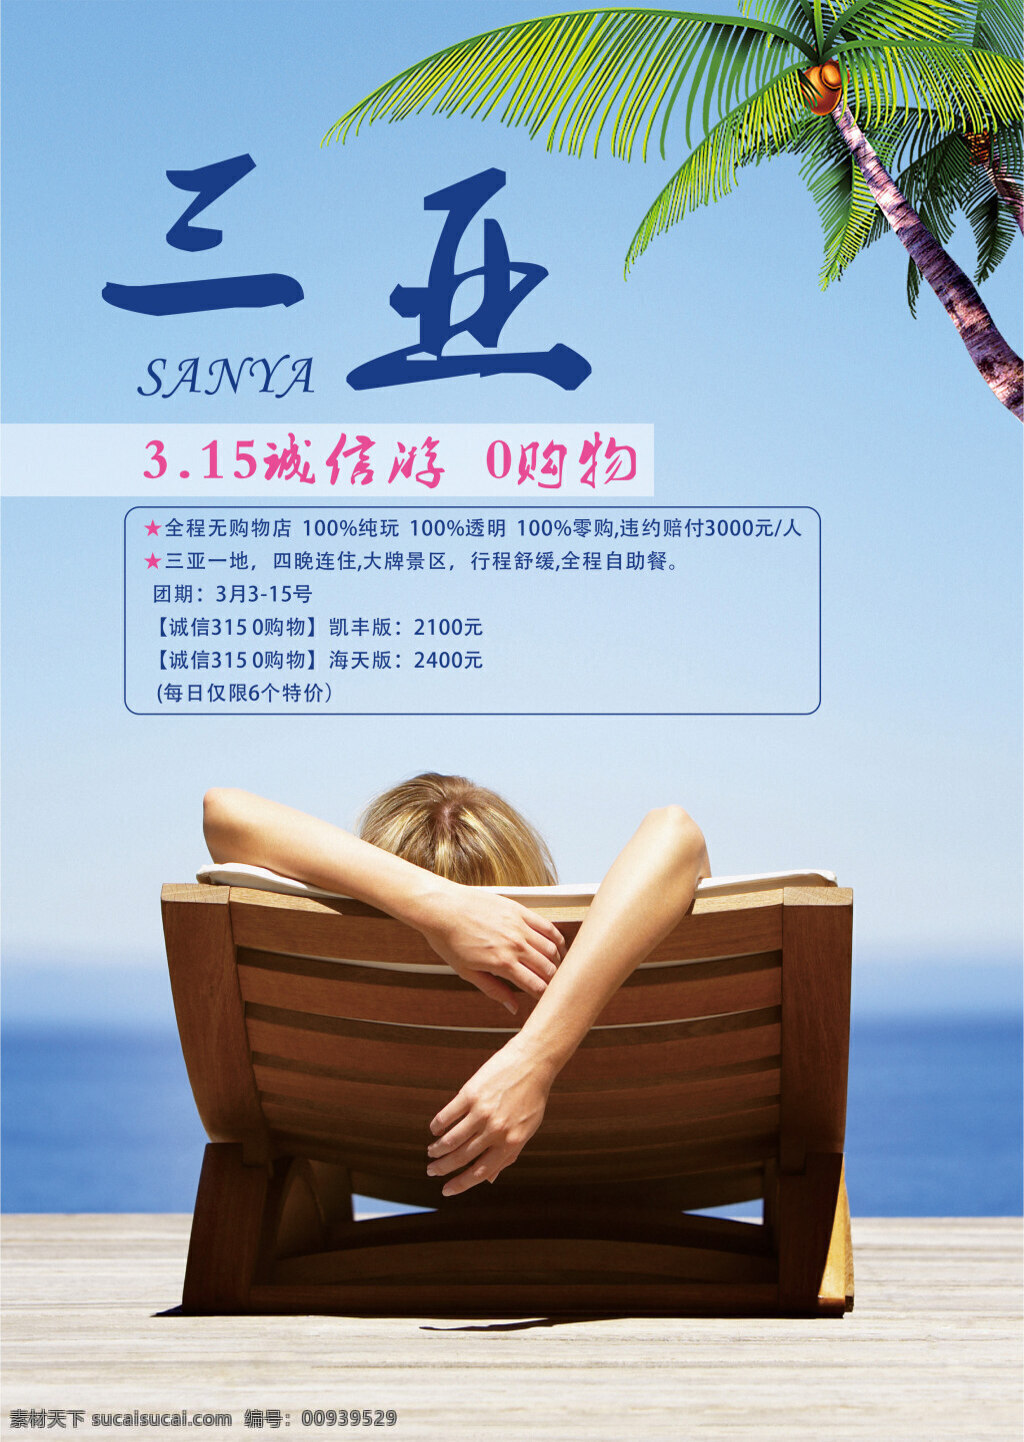 三亚酒店海报 三亚 度假 海南 沙滩 旅游